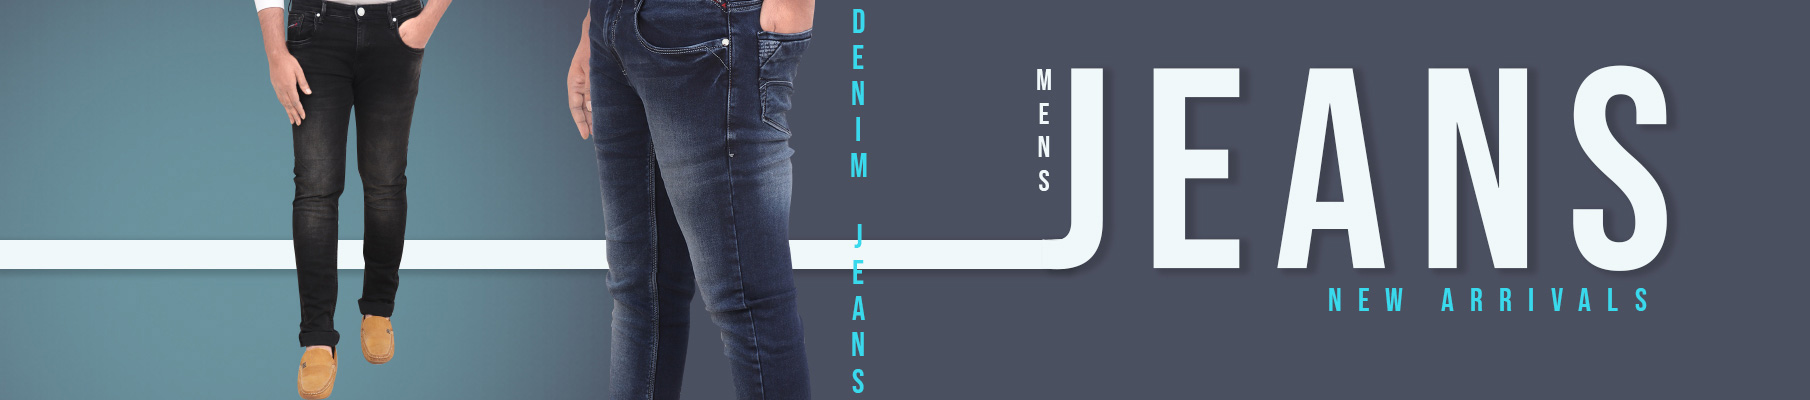 Mens Cotton Jeans